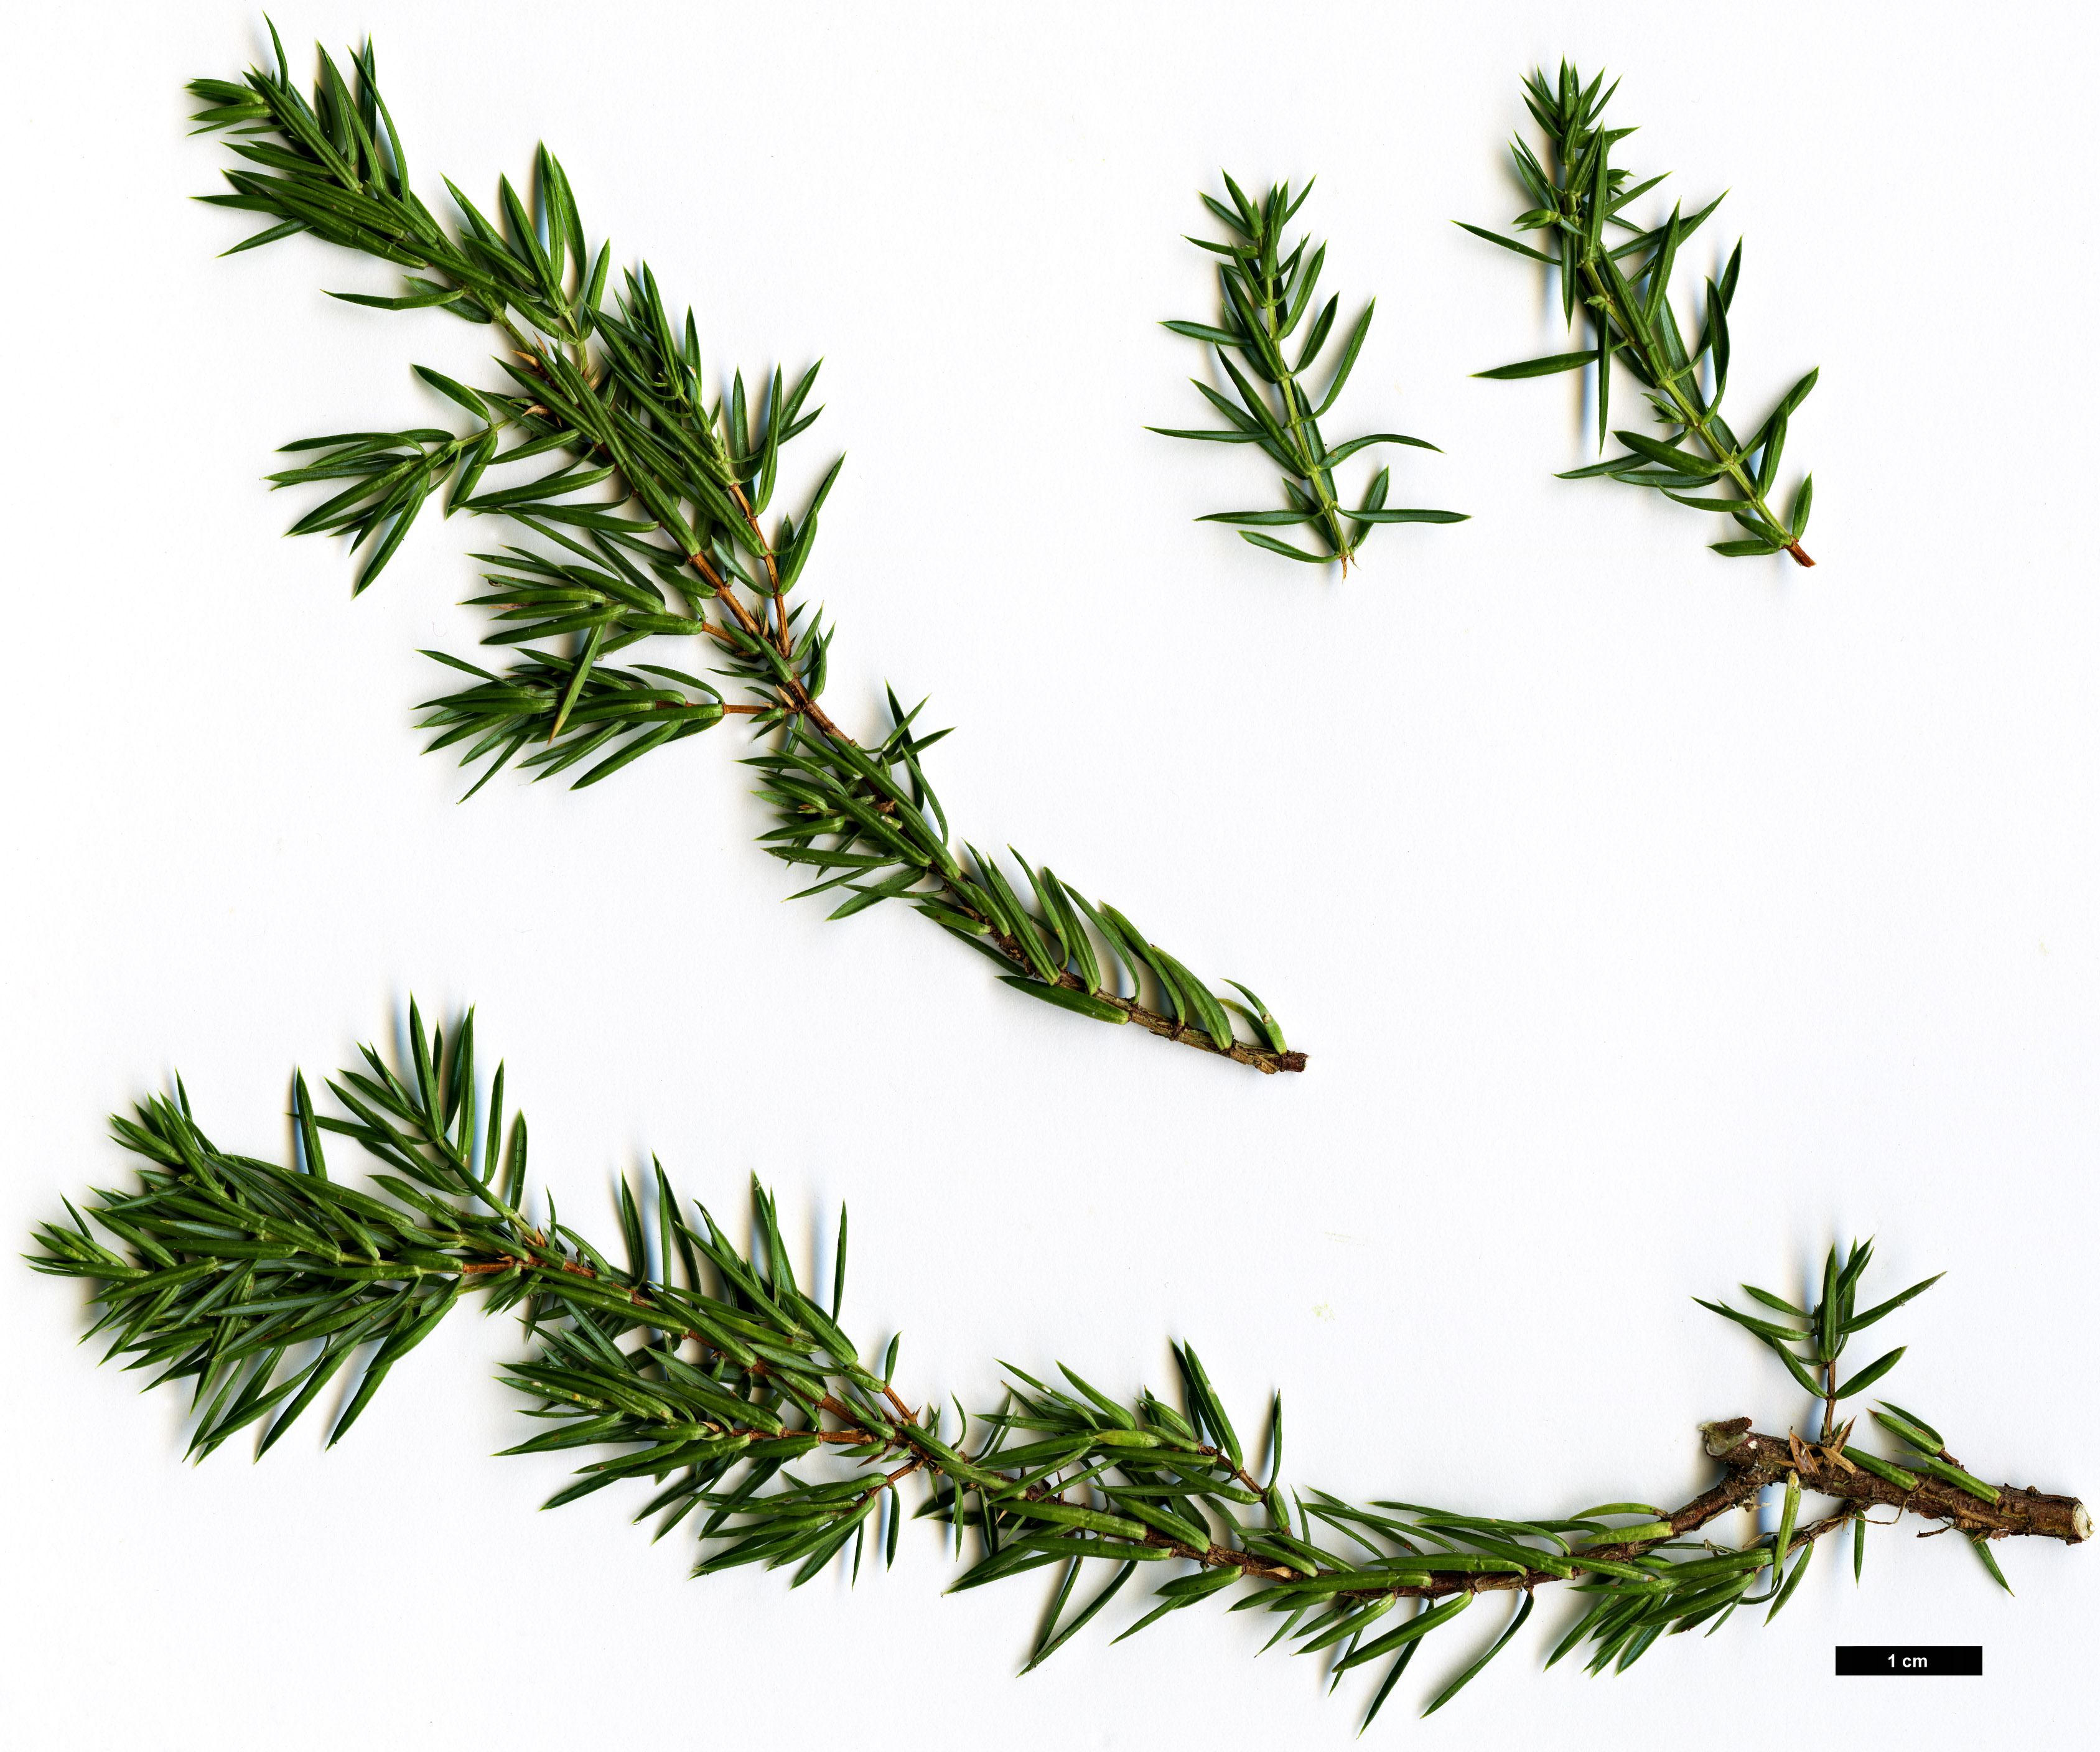 High resolution image: Family: Cupressaceae - Genus: Juniperus - Taxon: communis